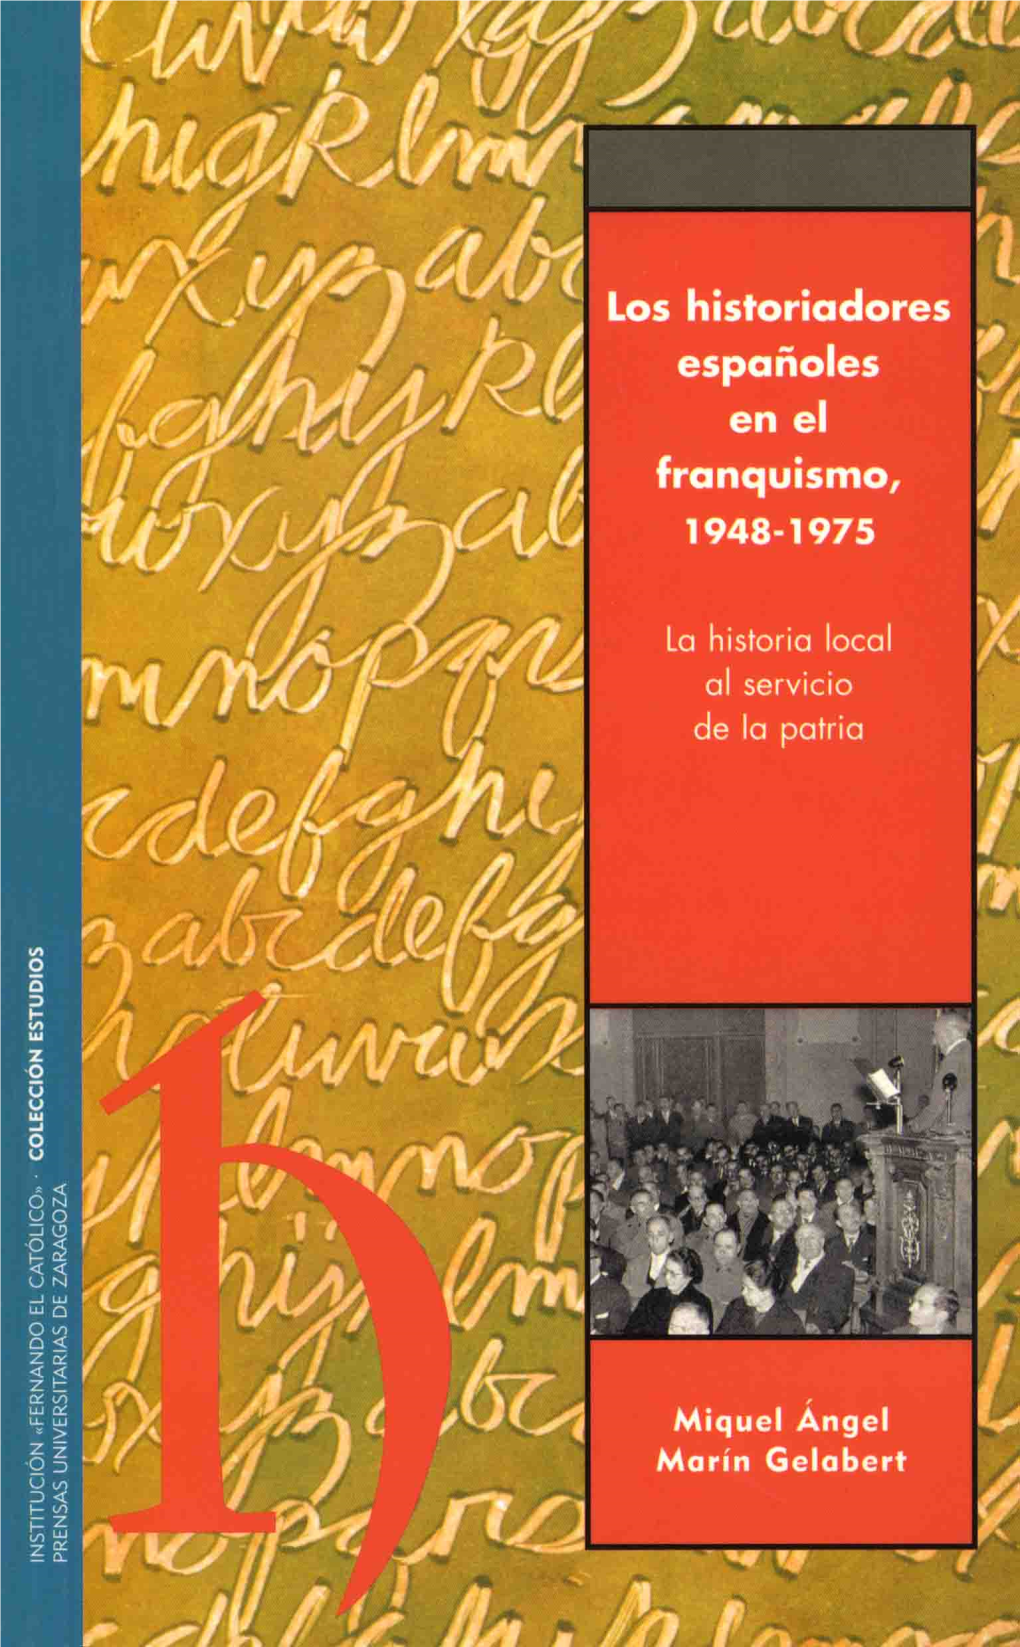 Los Historiadores Españoles En El Franquismo, 1948-1975. La Historia Local Al Servicio De La Patria.—Miquel A